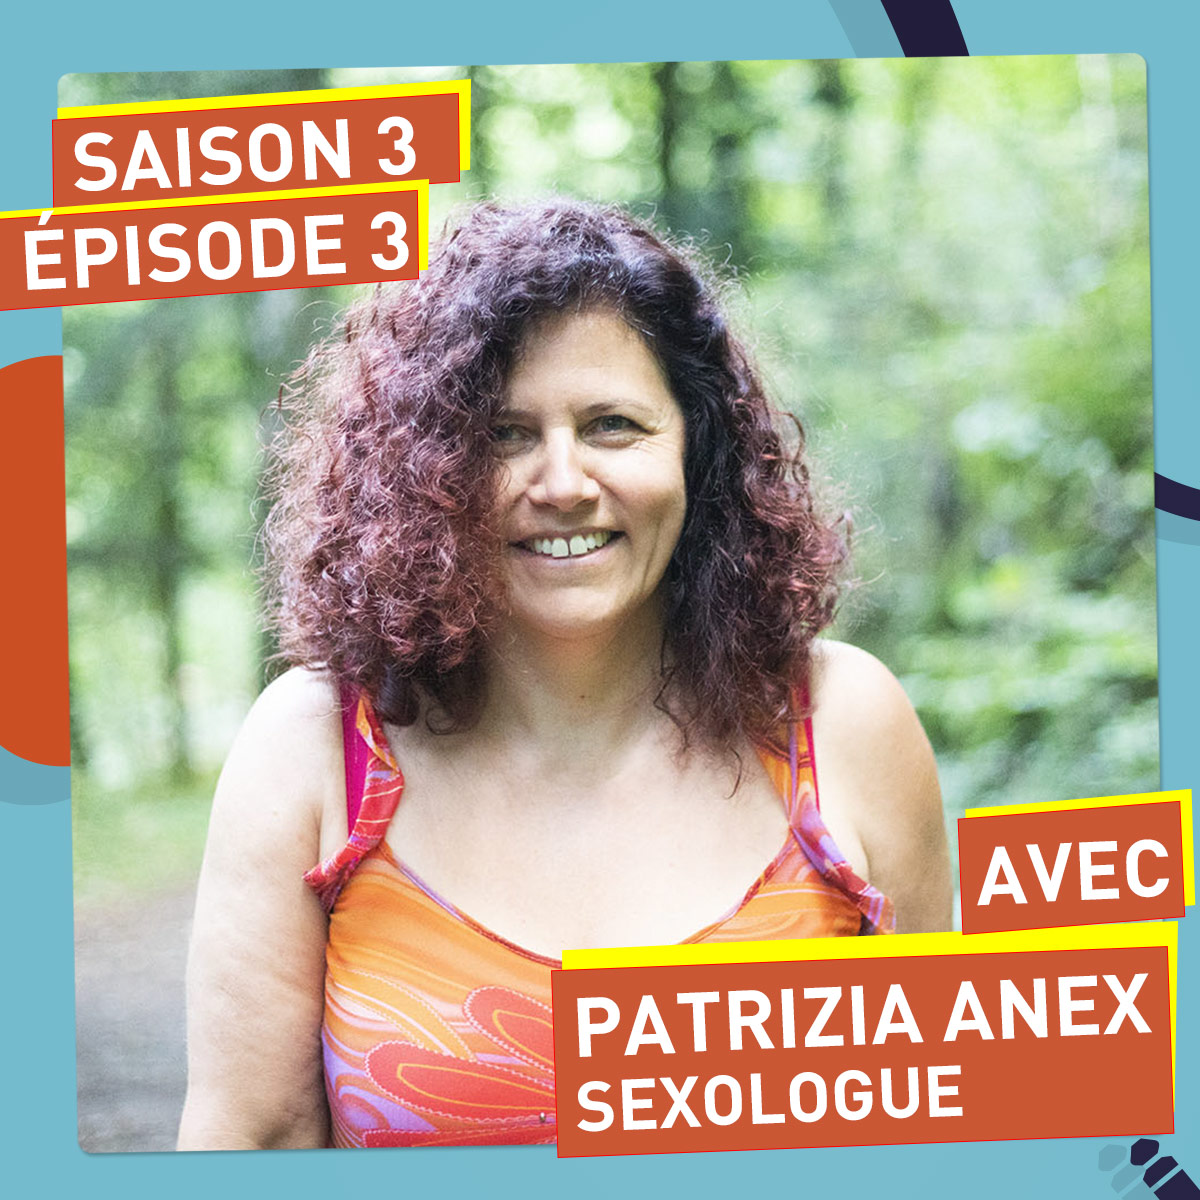 Patrizia Anex, sexologue, invité de ça résonne, podcast suisse romand